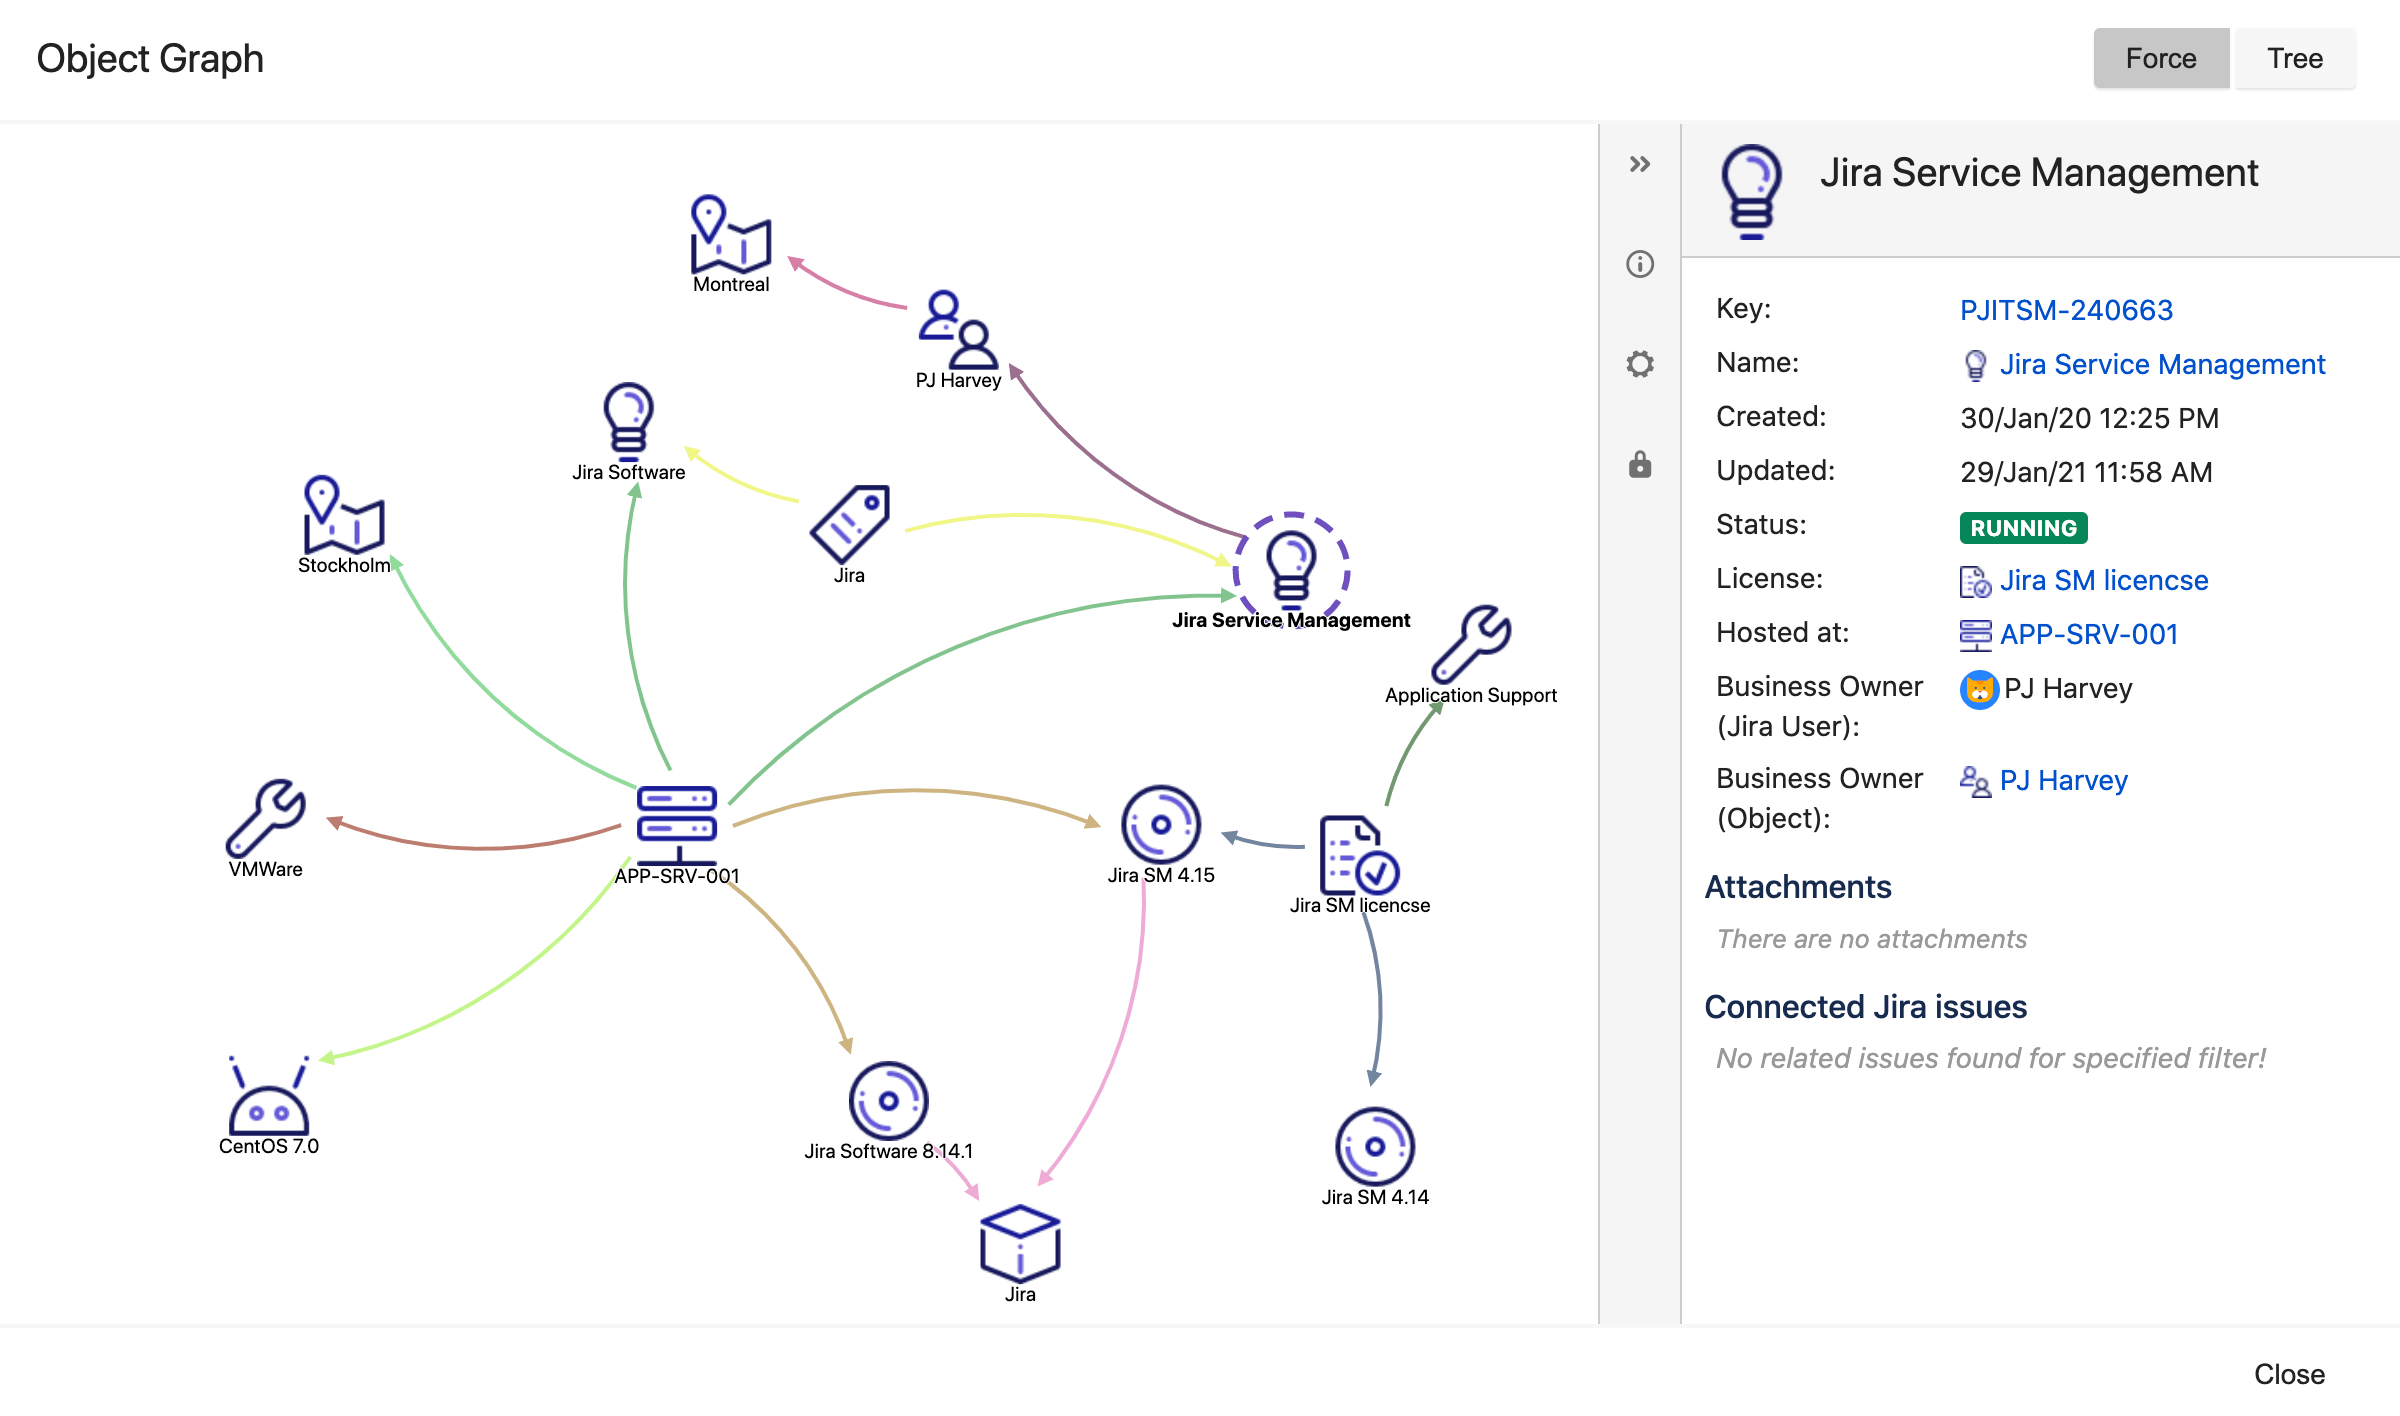 Janela do visualizador gráfico do Insight para o objeto "Jira Service Management". Exibindo dependências como os hosts em que está hospedado, o SO, as diferentes versões do Jira necessárias e a licença.